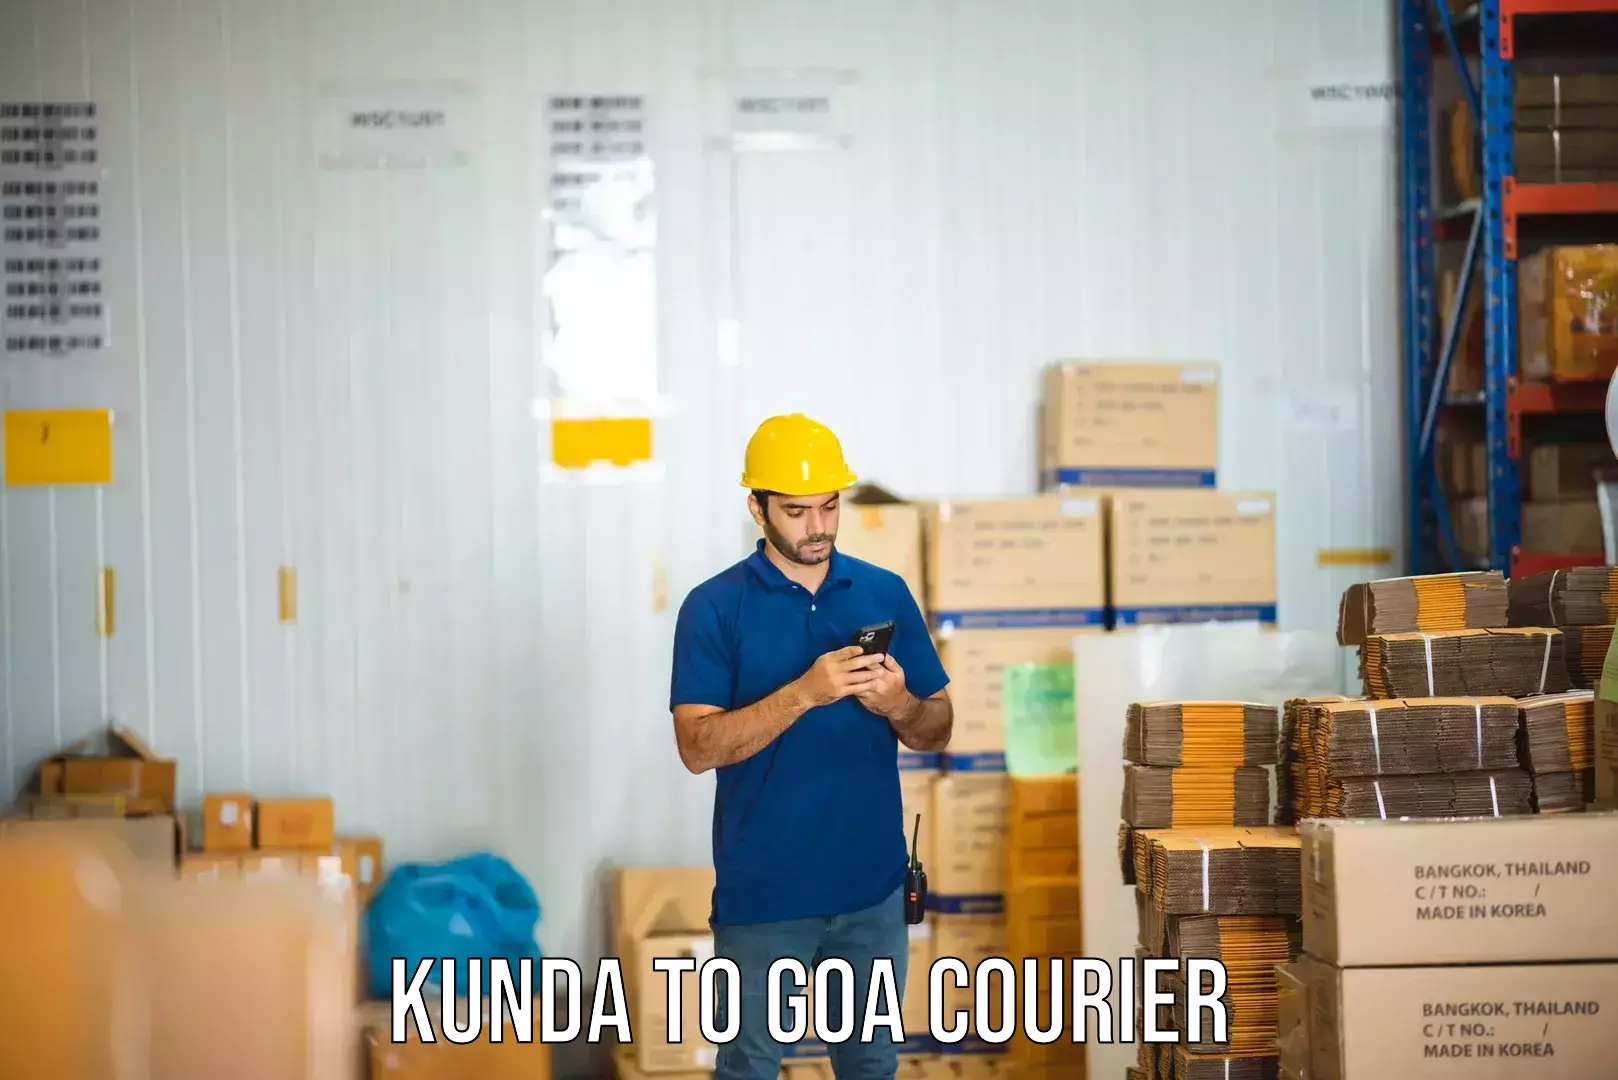 Nationwide delivery network Kunda to IIT Goa